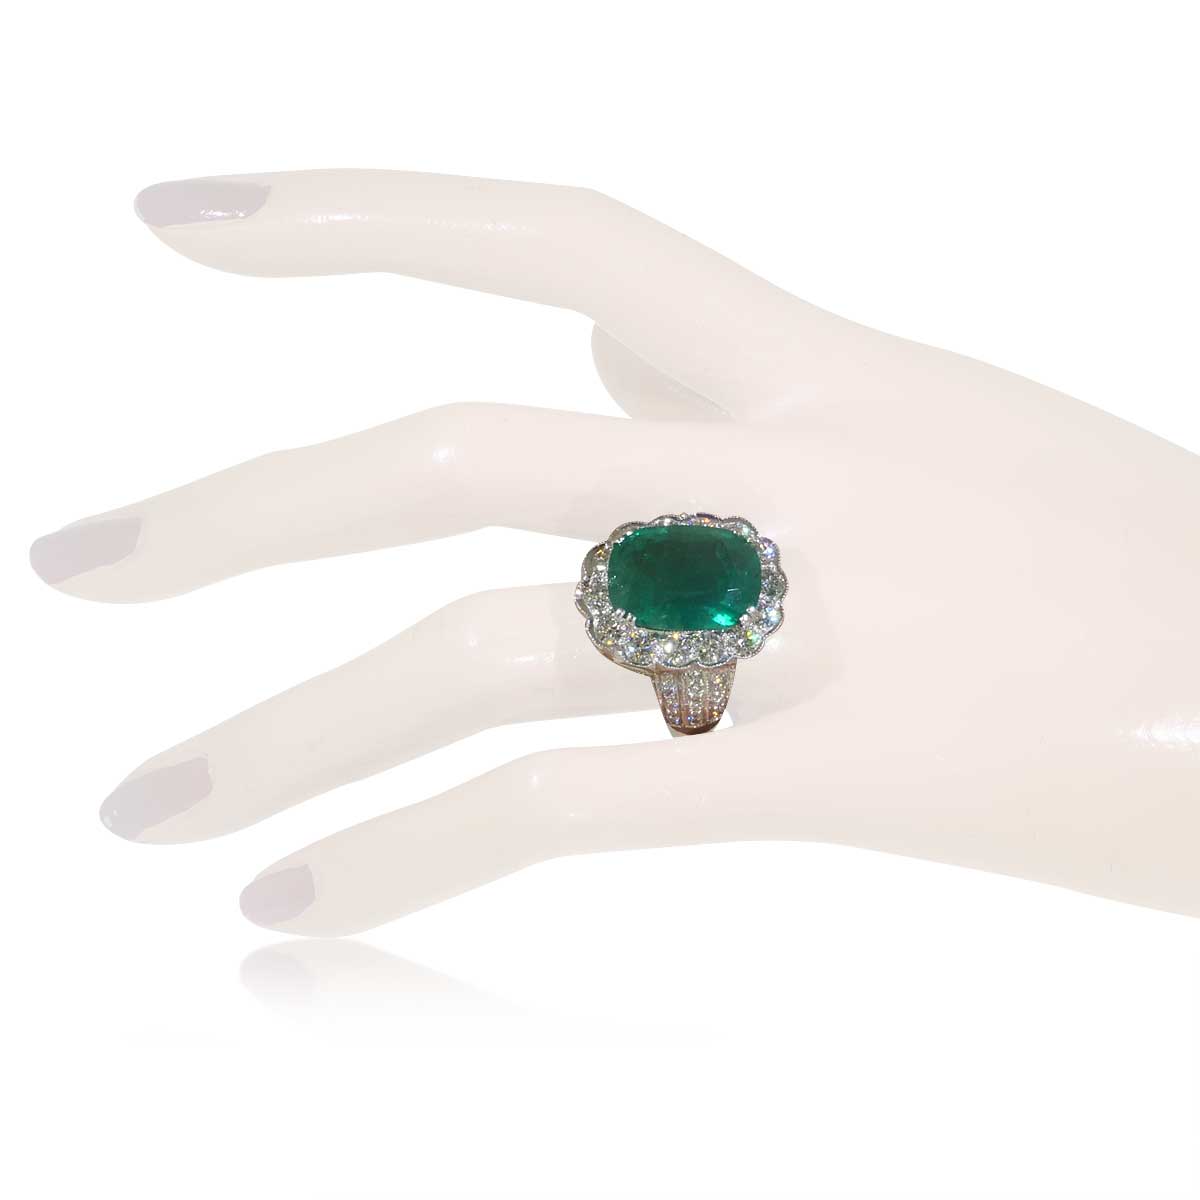  Smaragd-Diamant-Ring in Weissgold mit 11,86ct Smaragd und 2,61ct Brillanten